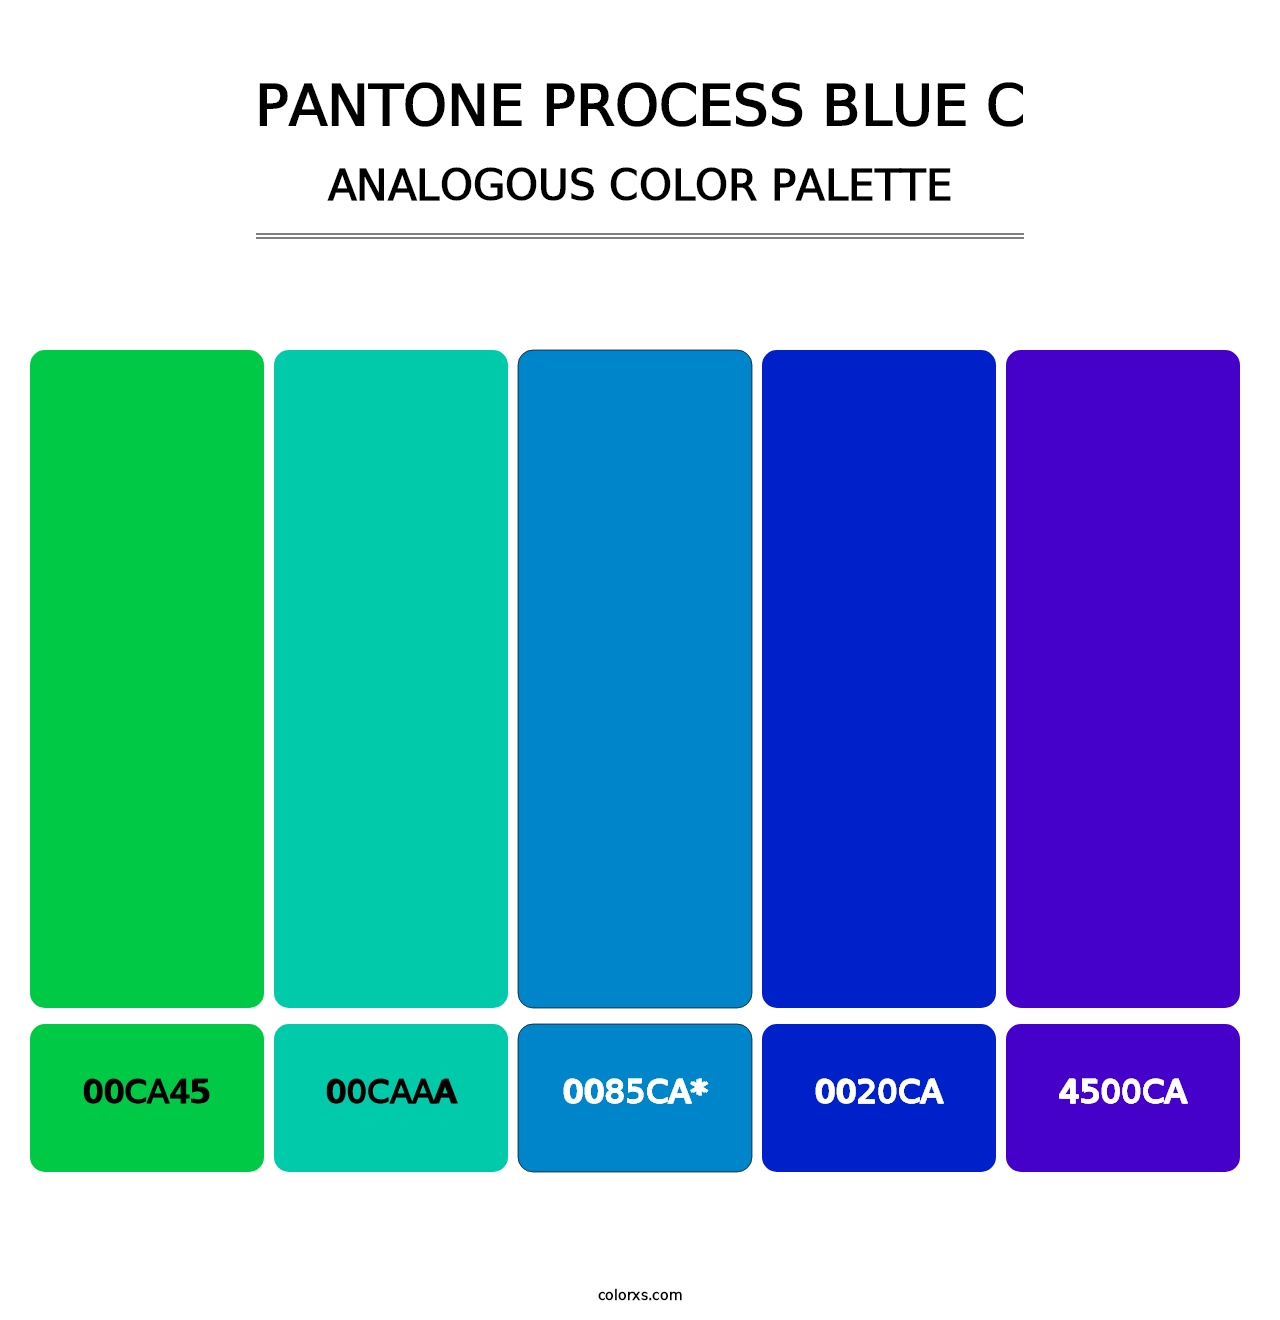 PANTONE Process Blue C - Analogous Color Palette